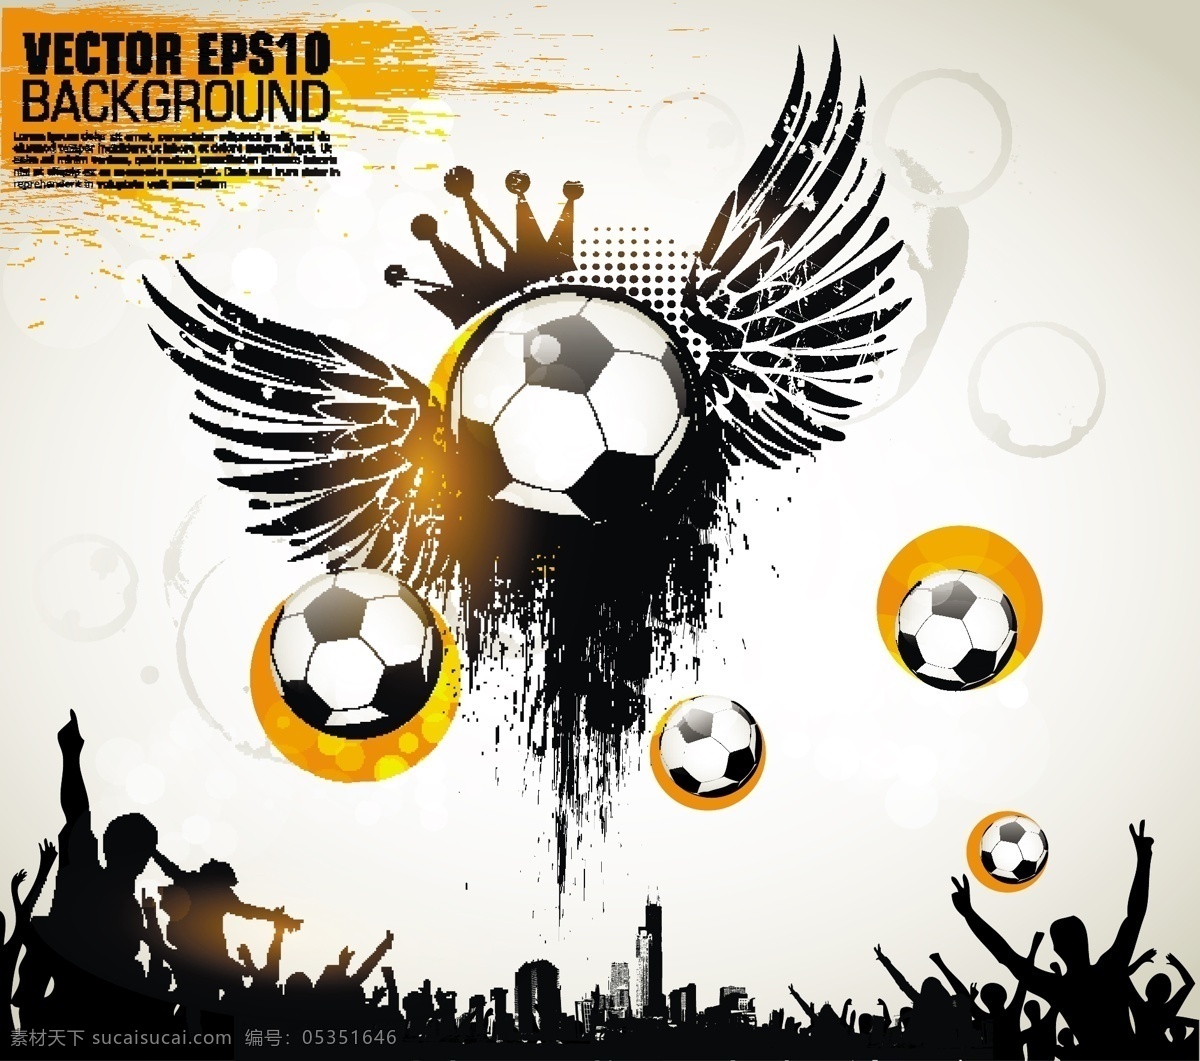 戴 翅膀 足球 海报 模板下载 复古 球迷 人物剪影 世界杯 巴西 背景 体育运动 生活百科 矢量素材 白色